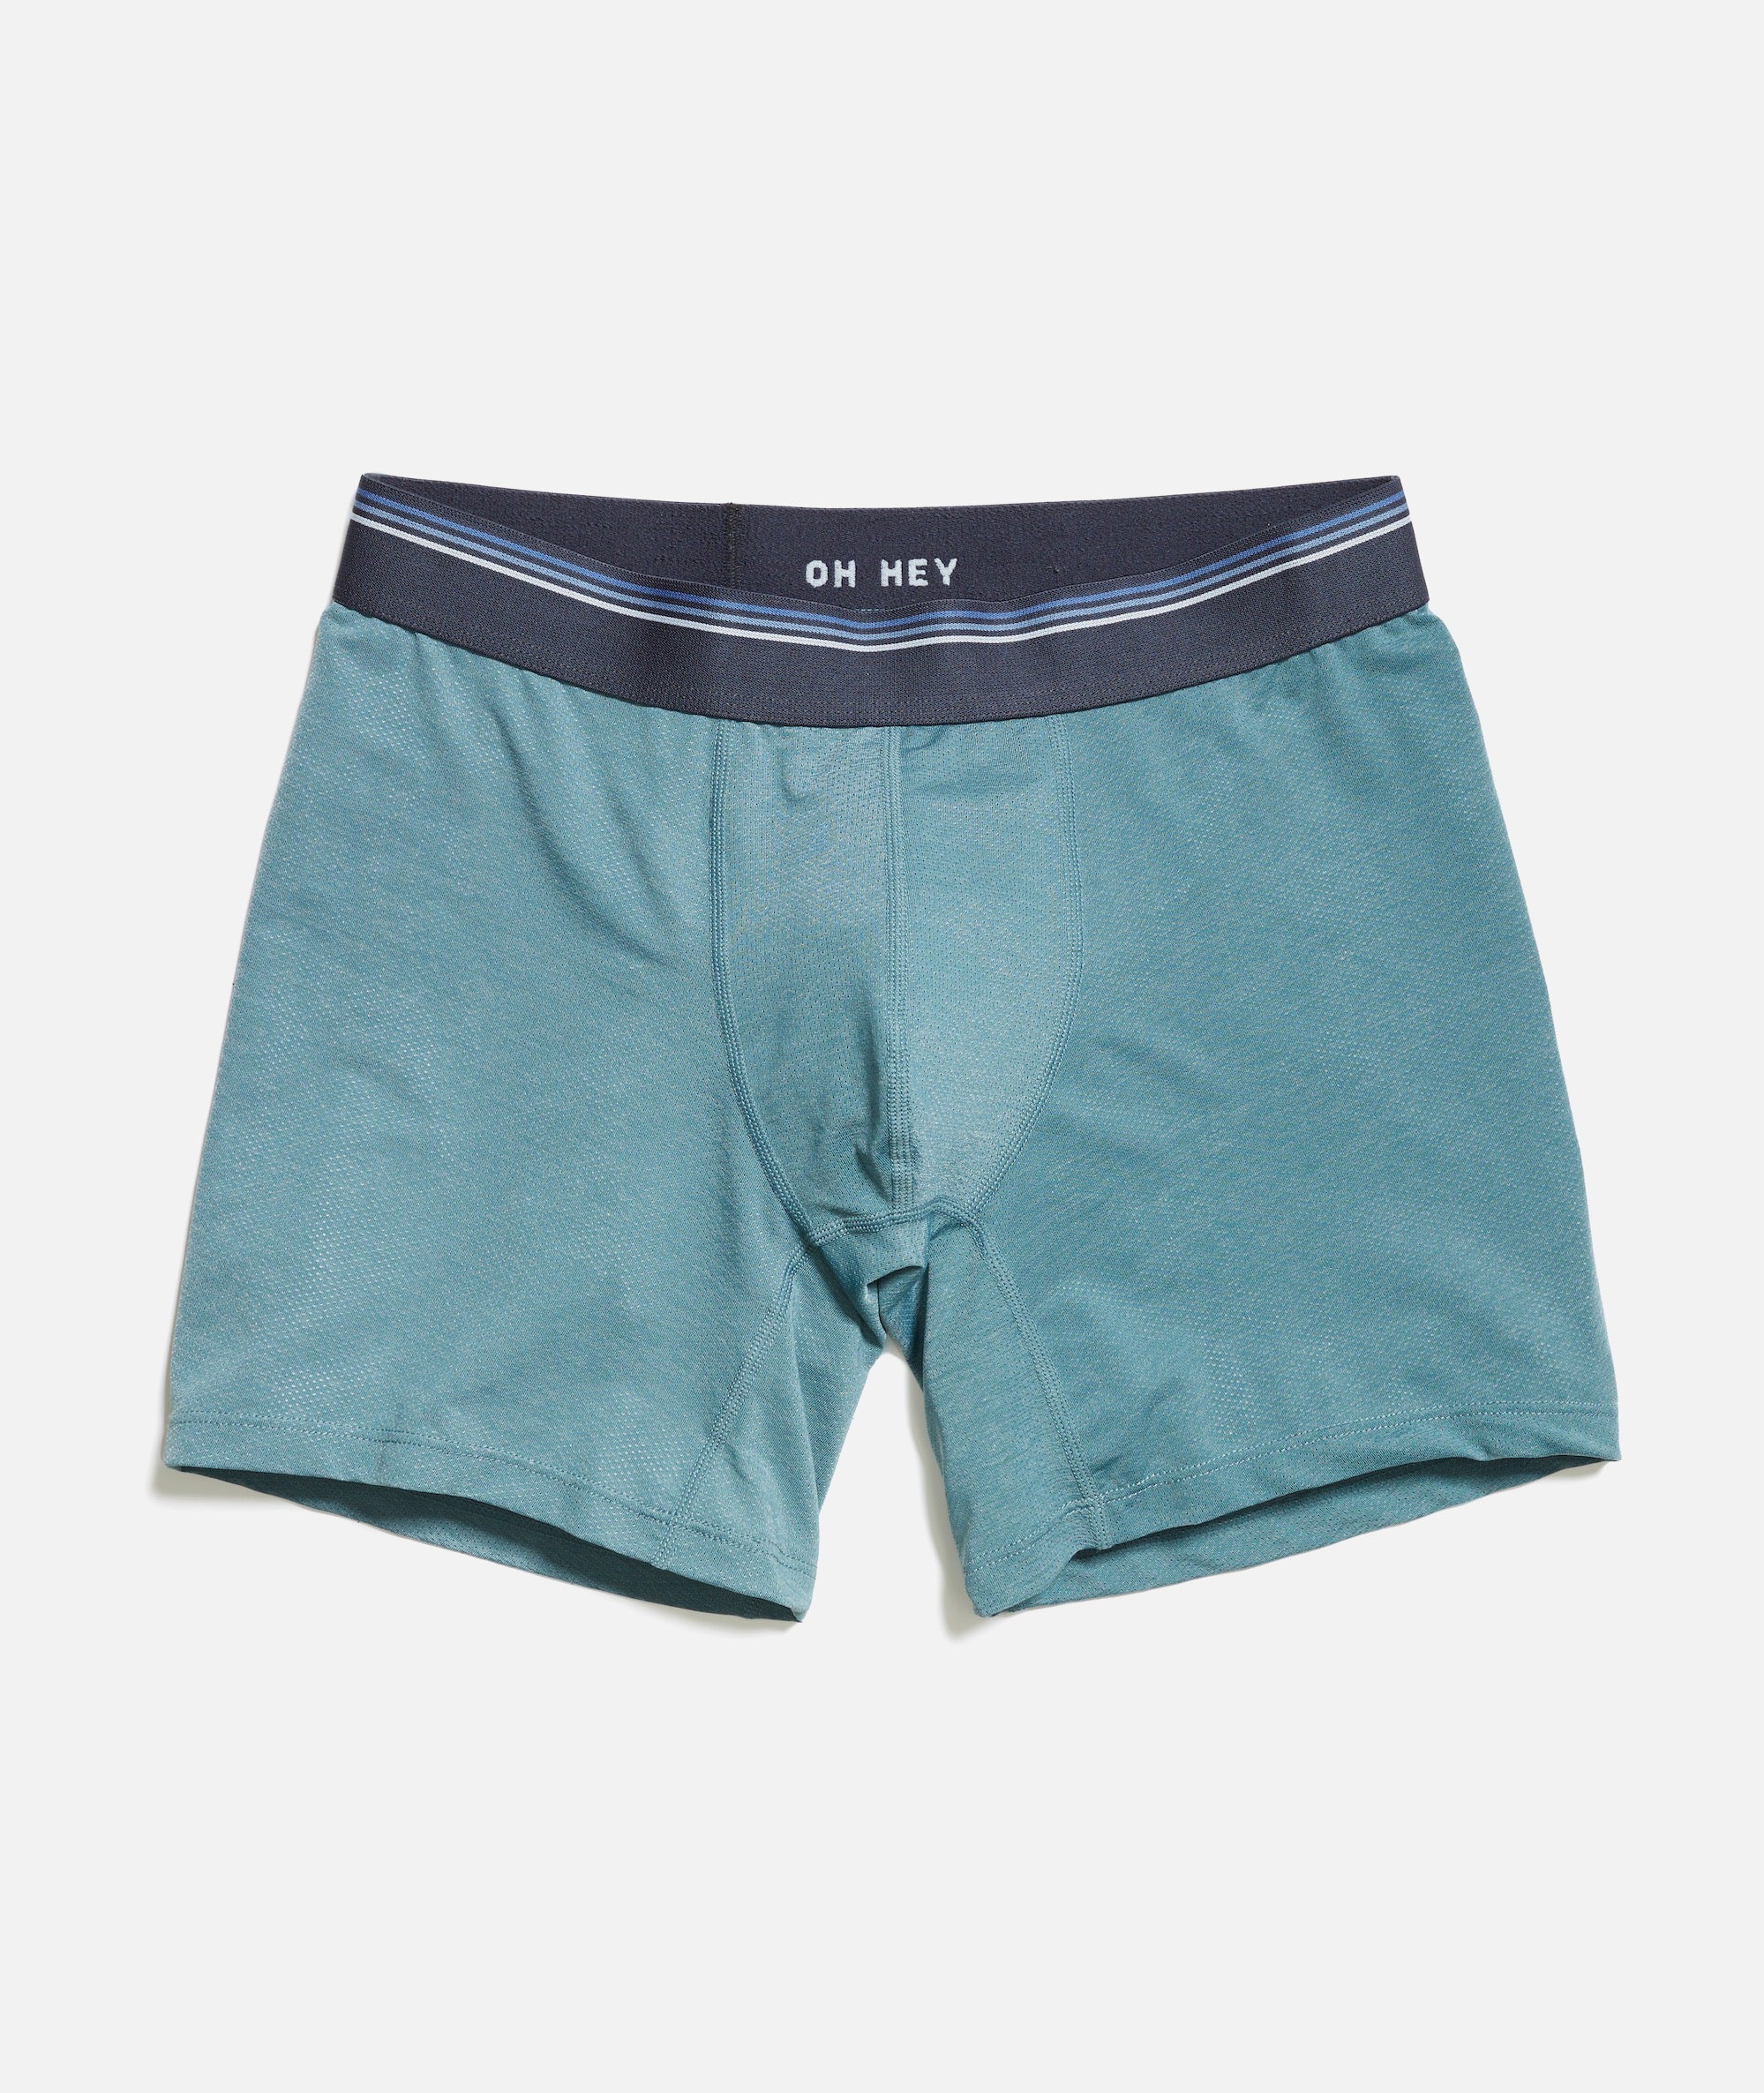 Men's Underwear  Boxers, Briefs & Trunks - Matalan